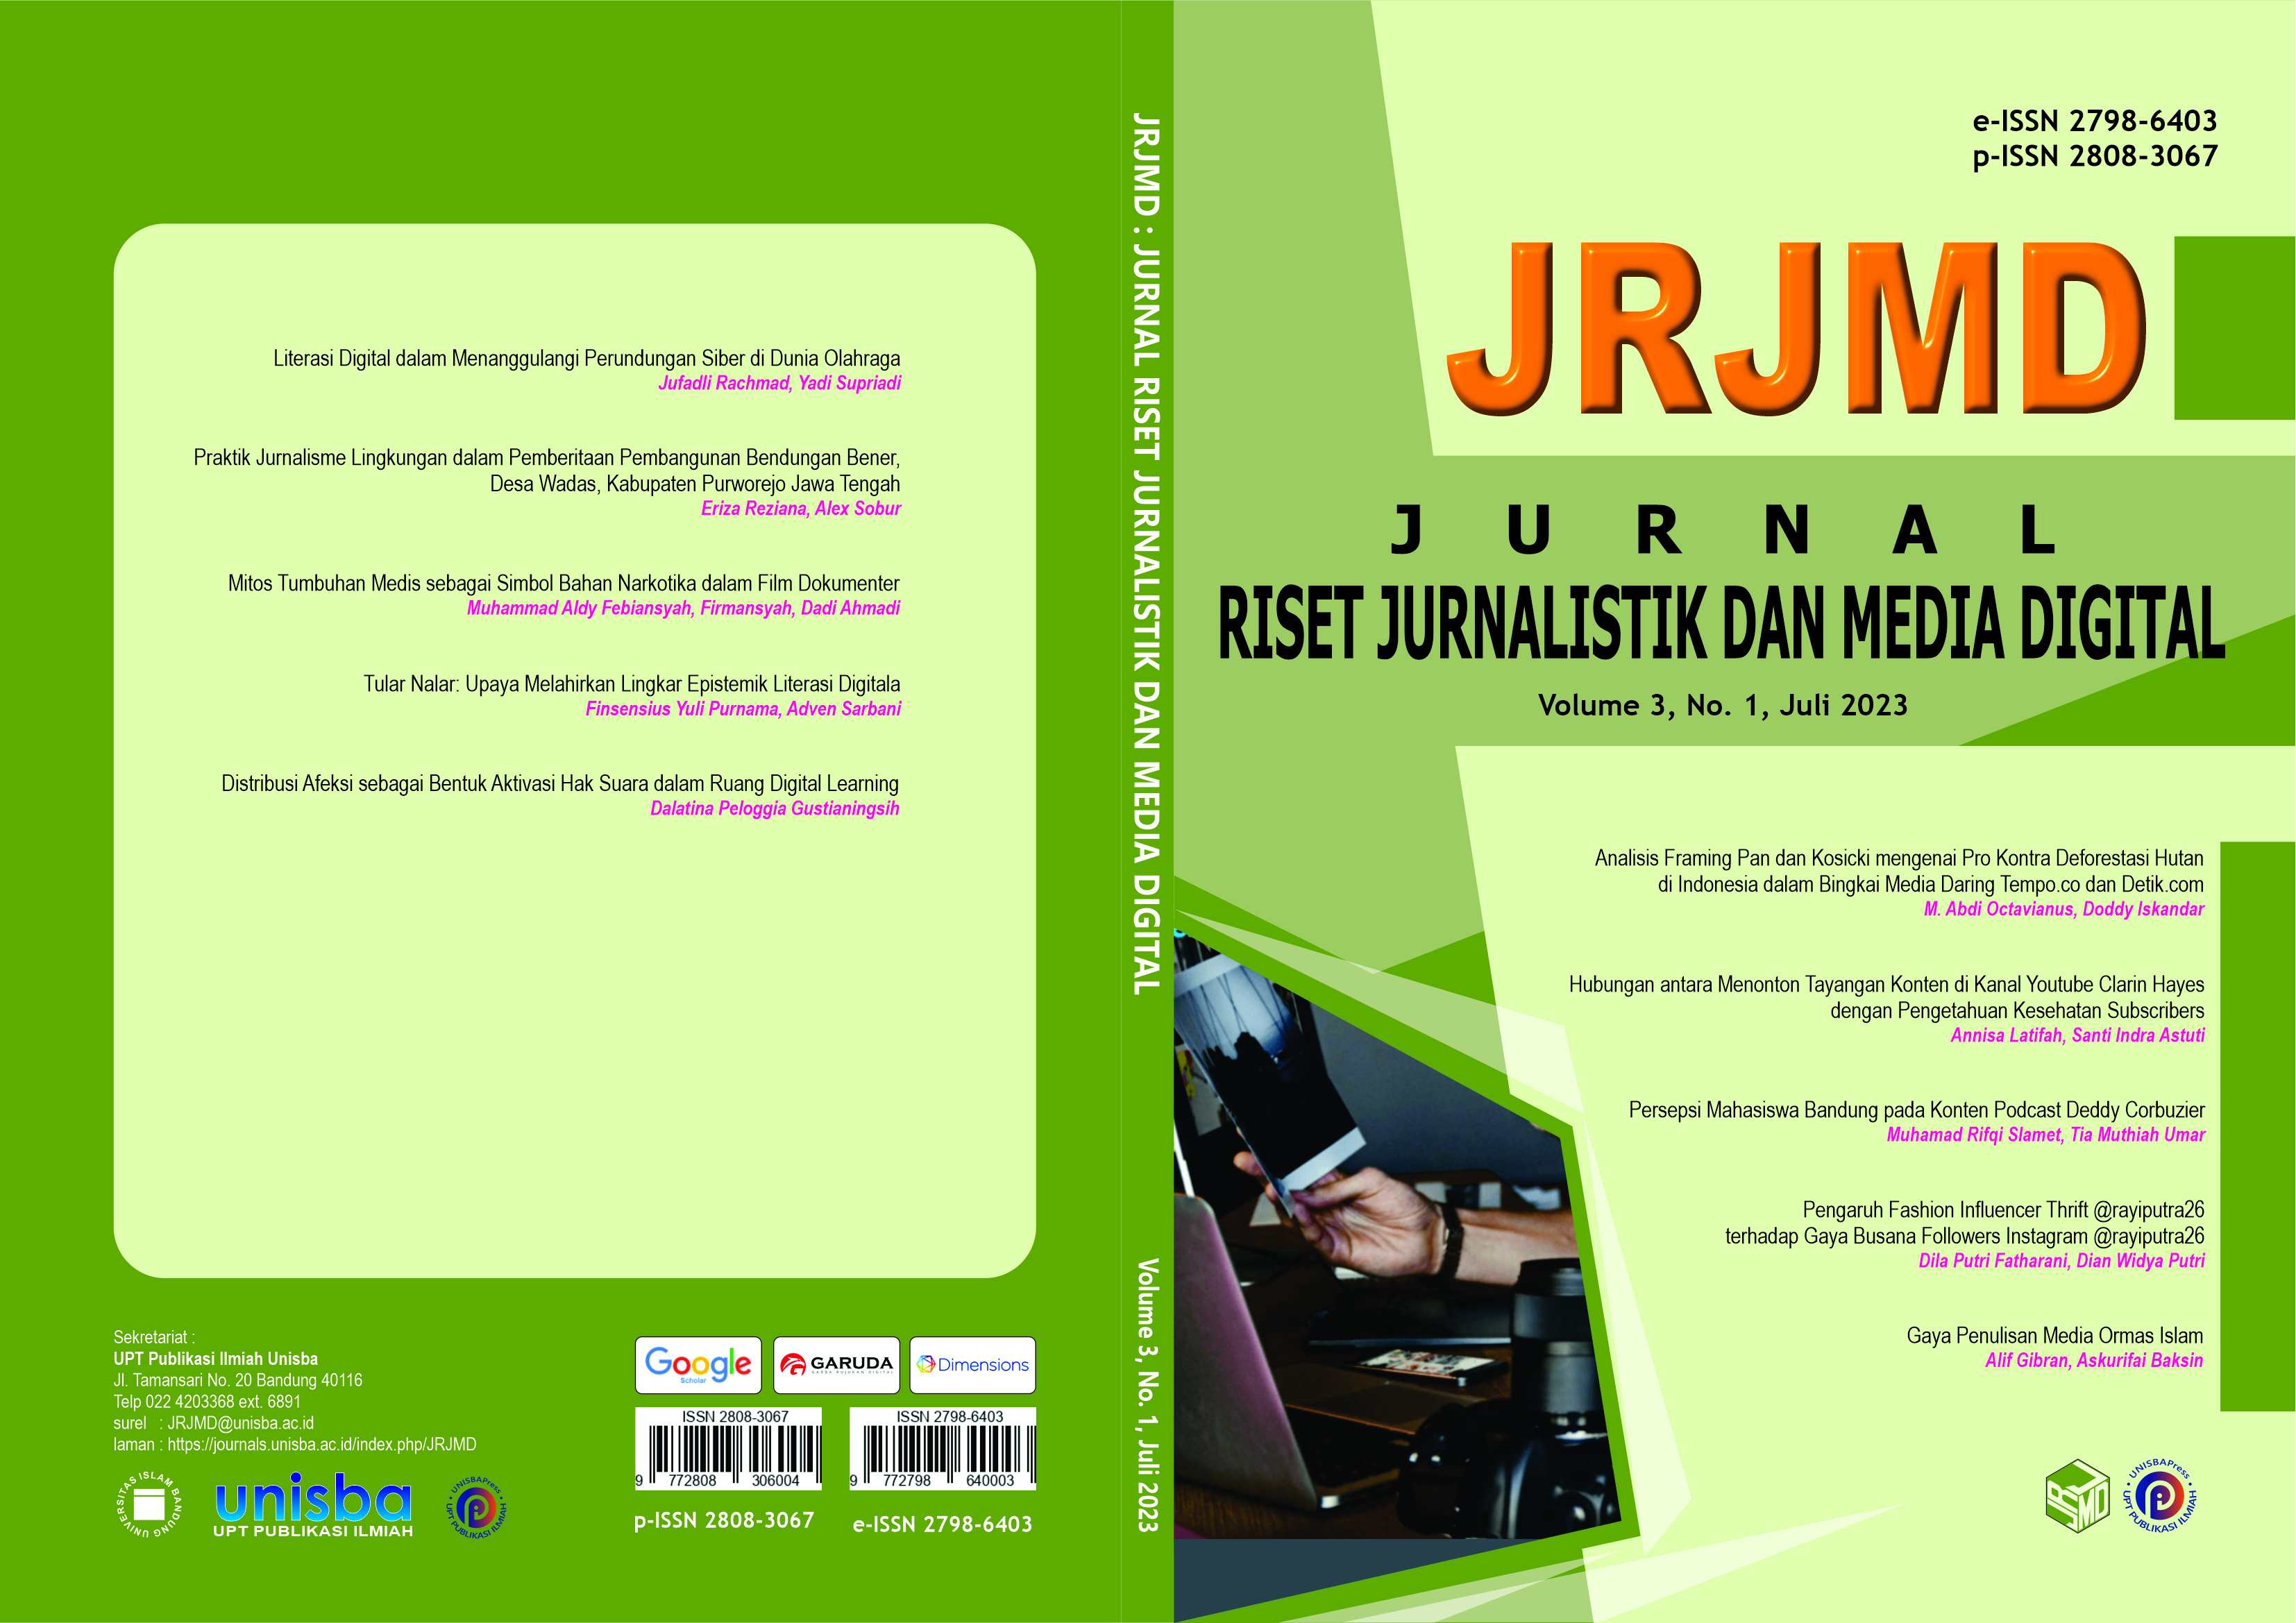 					View Volume 3, No. 1, Juli 2023 Jurnal Riset Jurnalistik dan Media Digital (JRJMD)
				